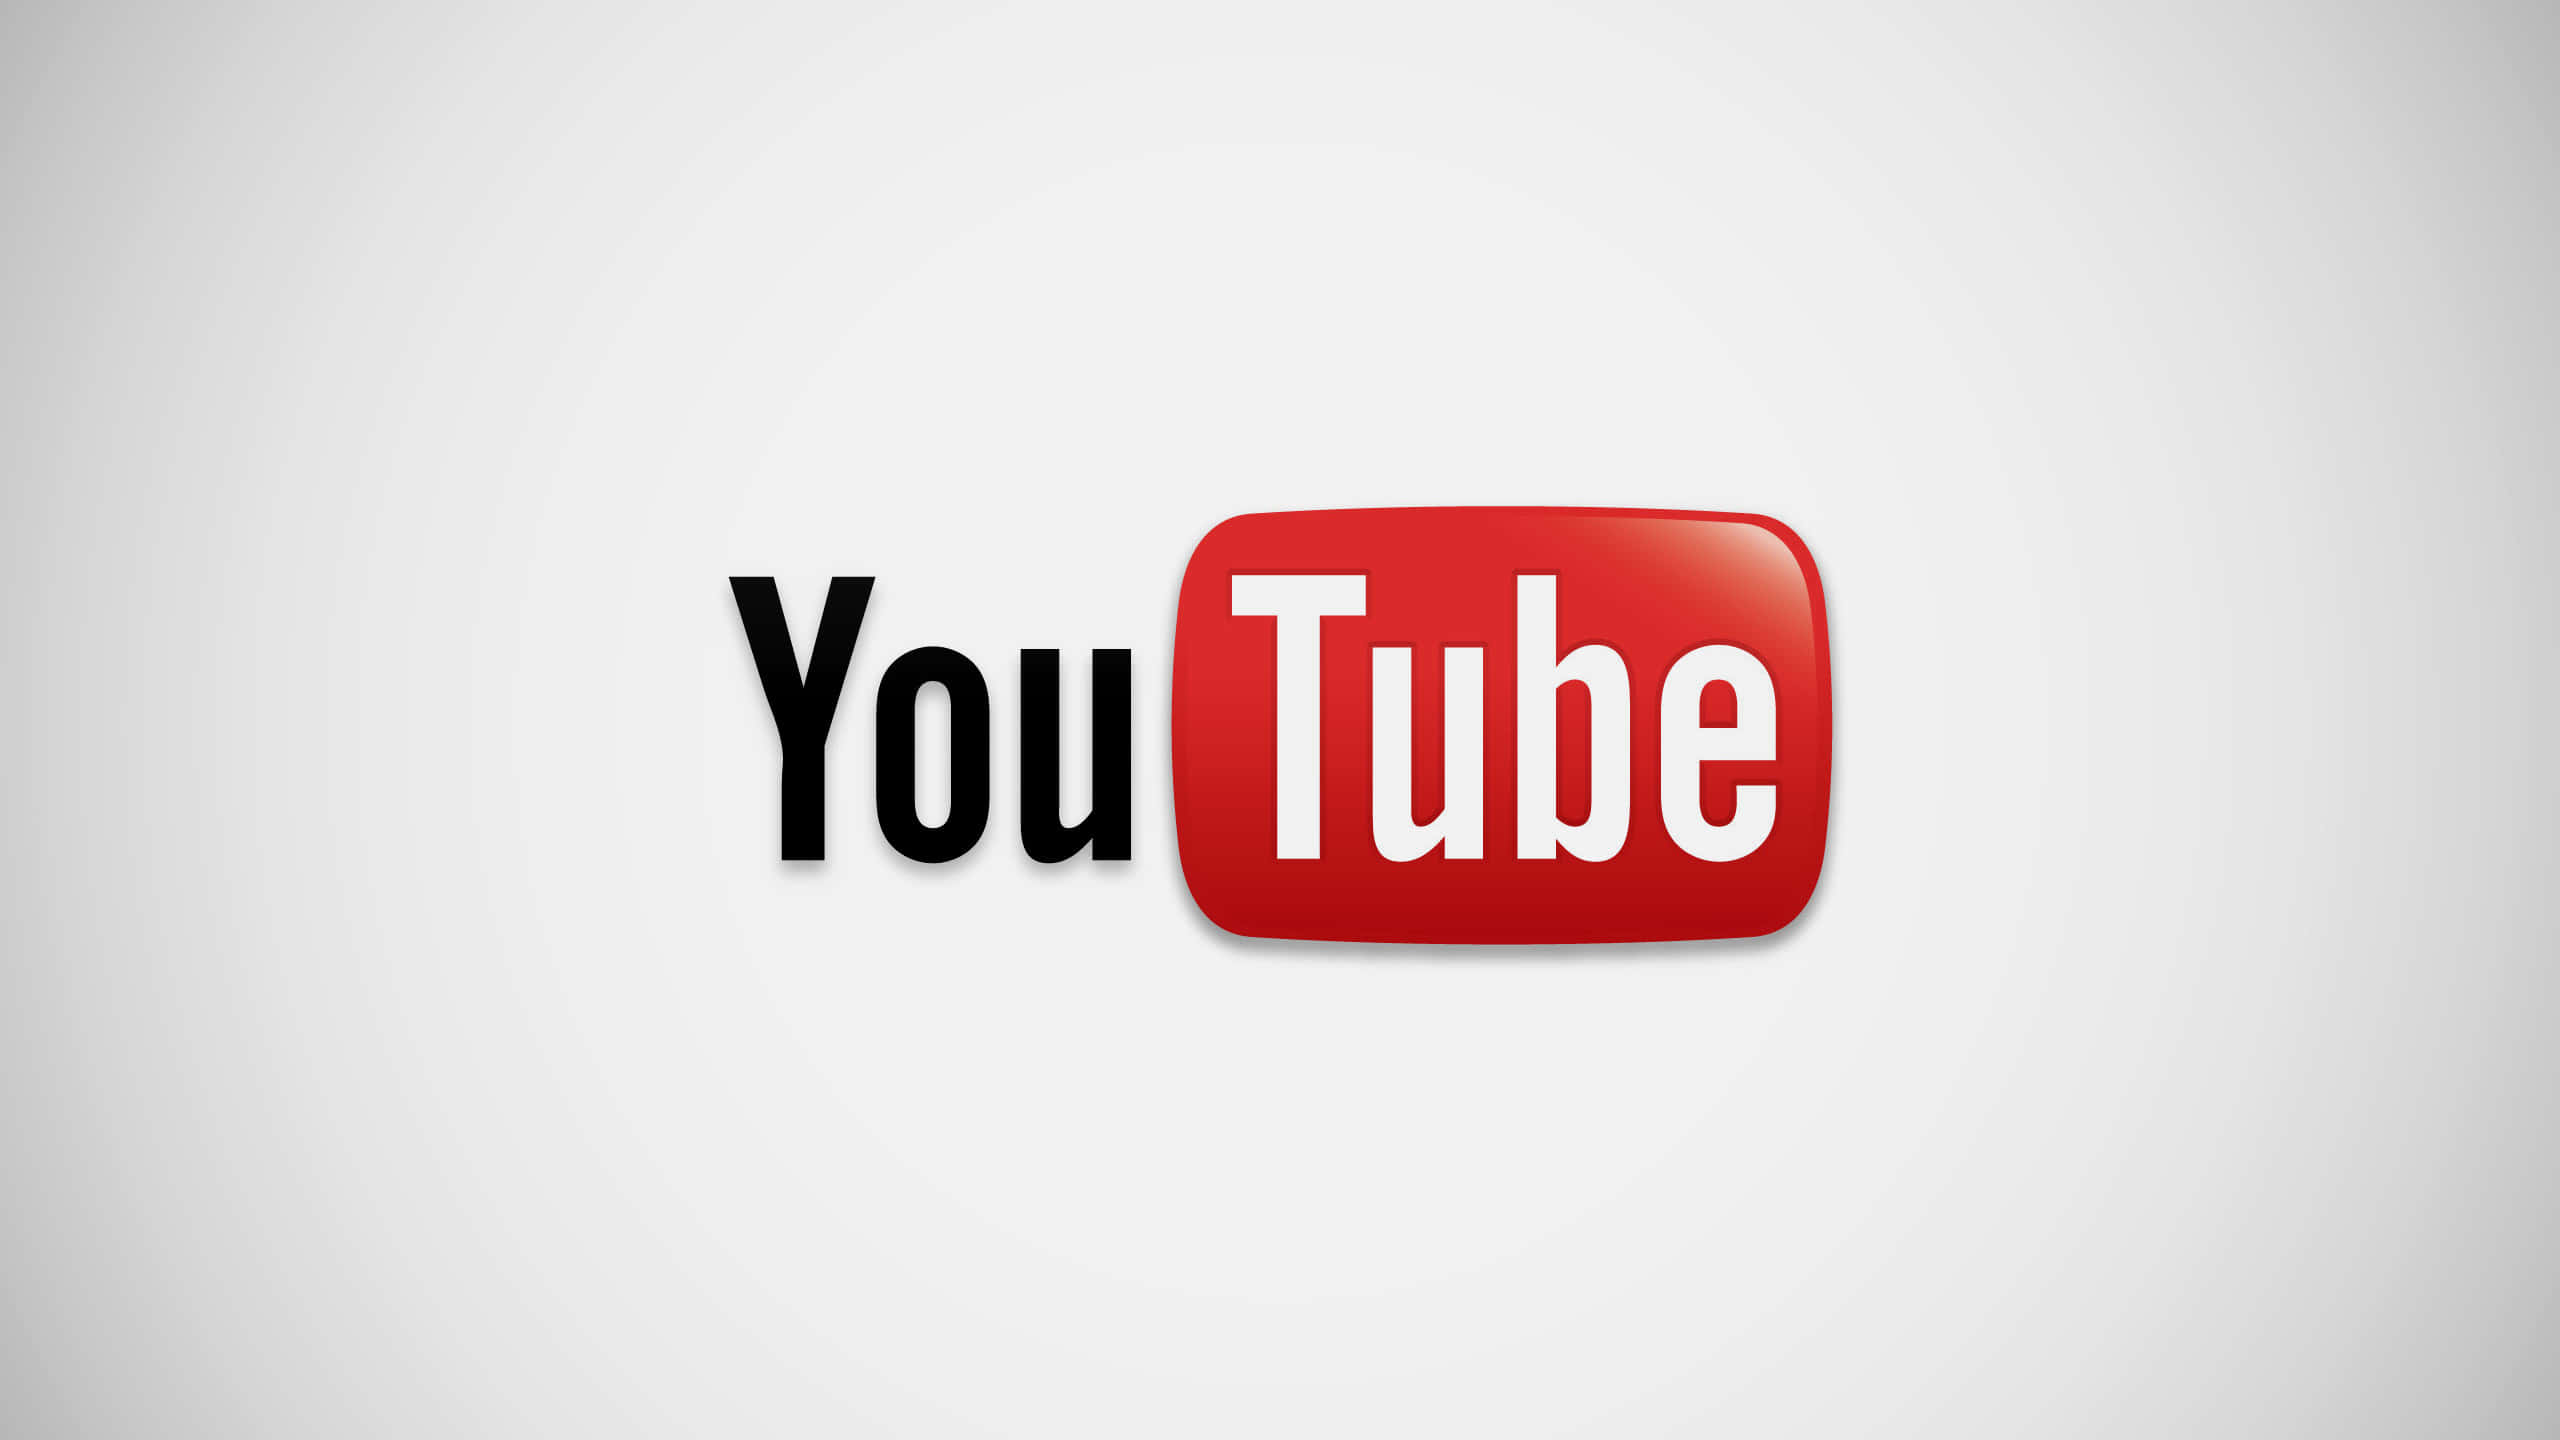 Logode Youtube Sobre Un Fondo Degradado Rojo